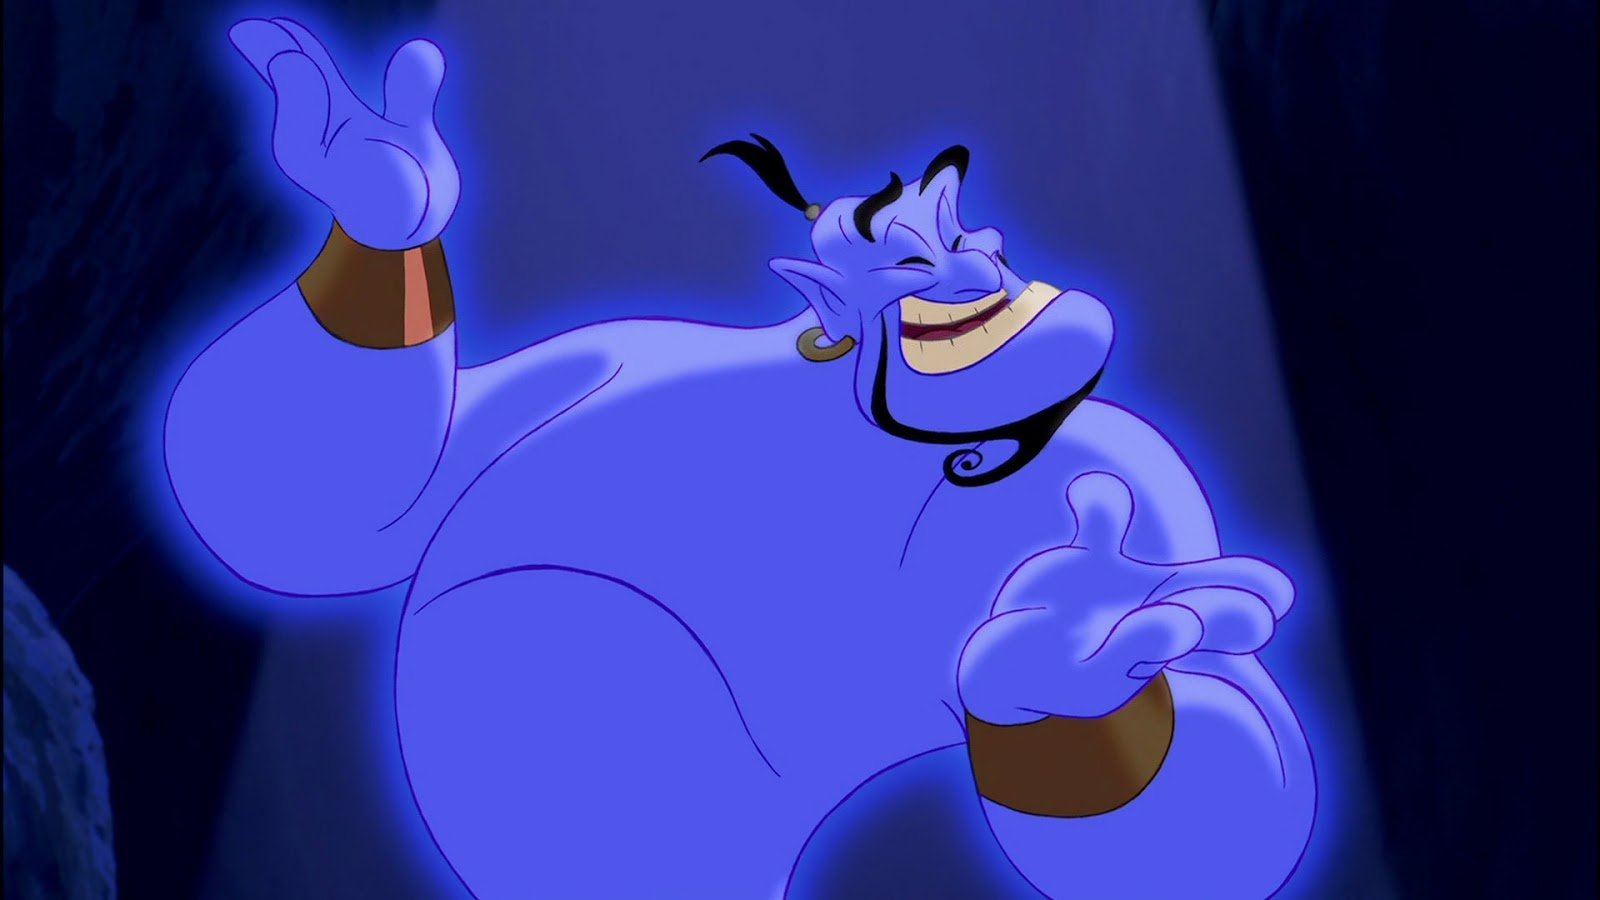 The Genie in Aladdin